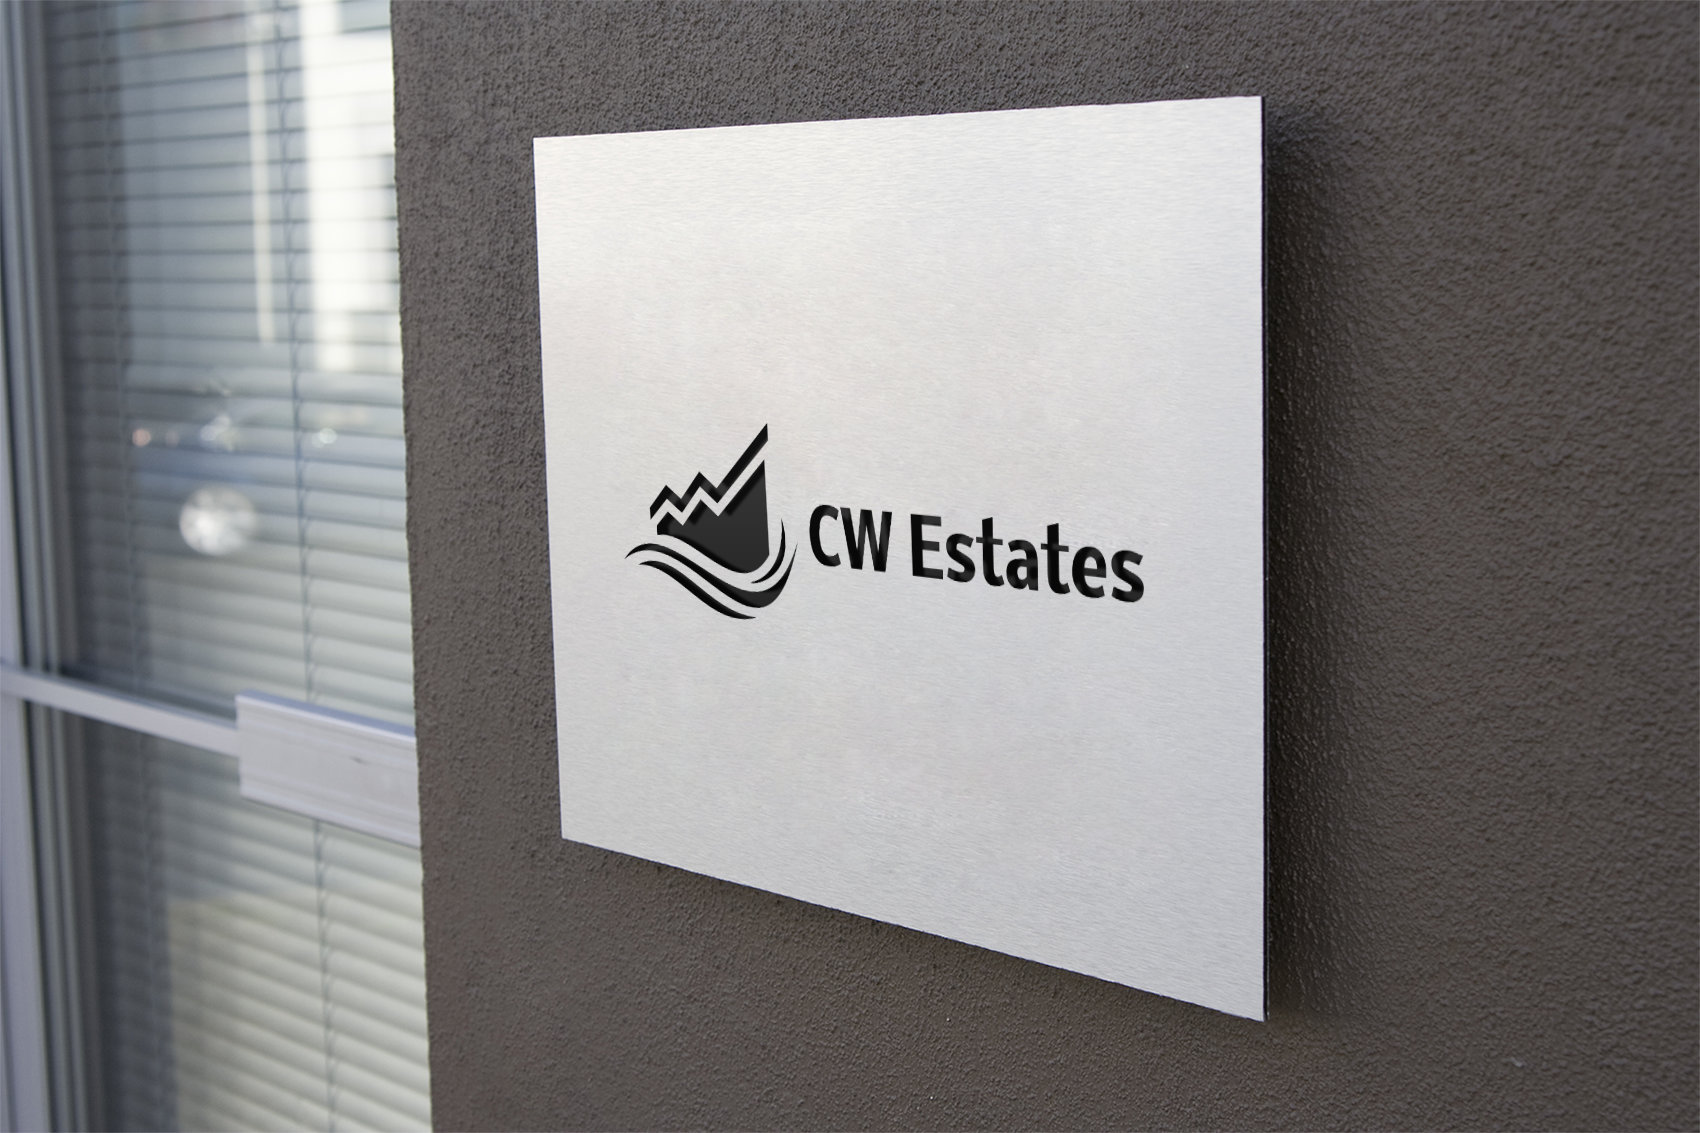 CW Estates